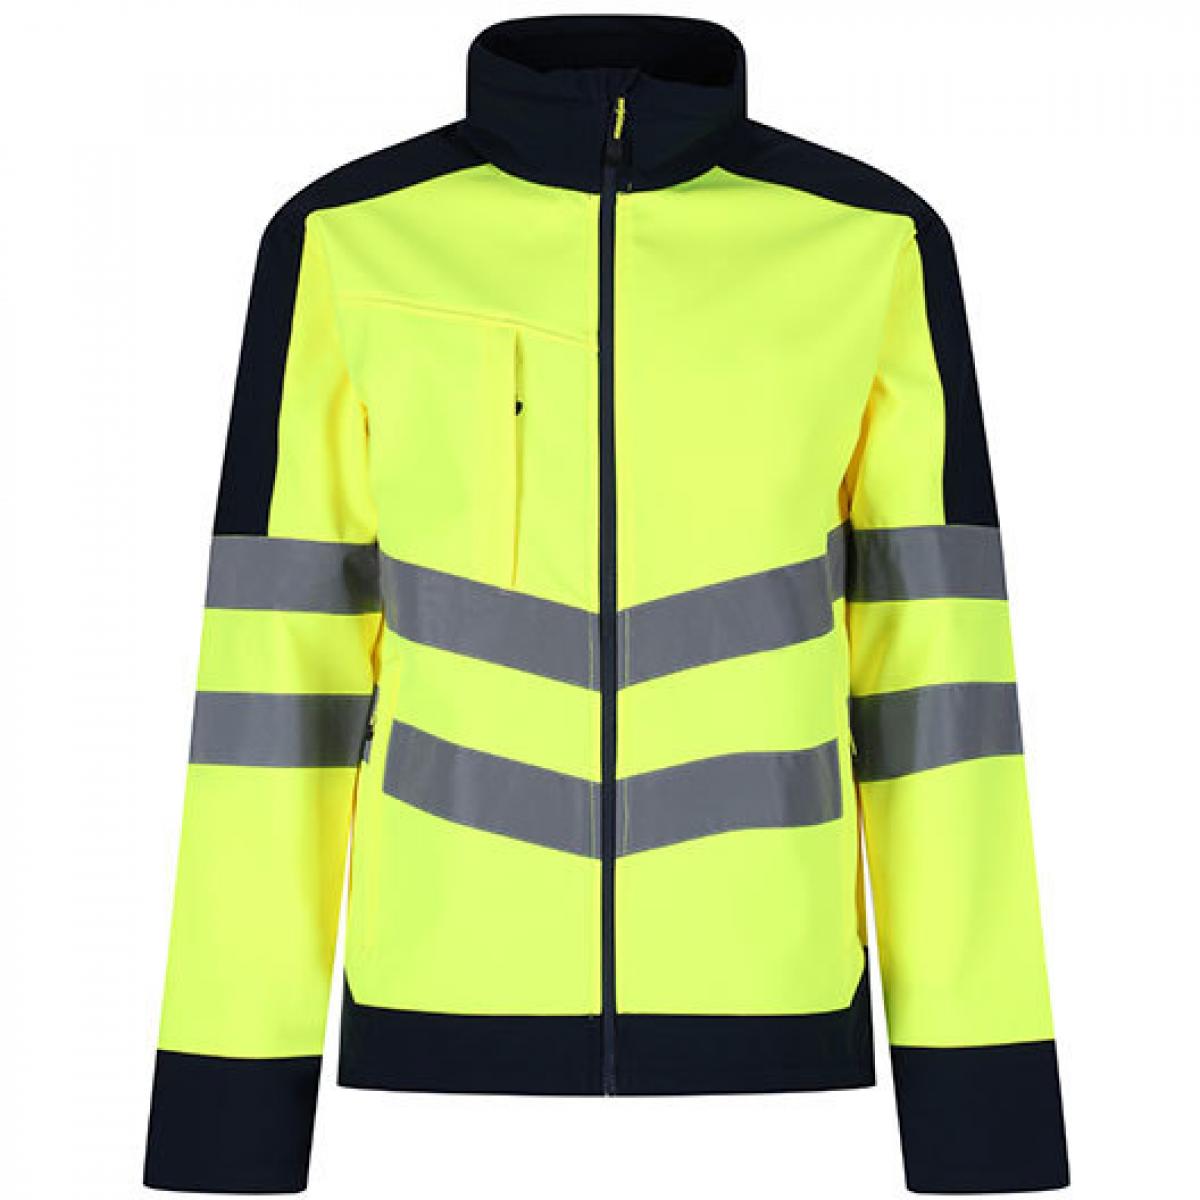 Hersteller: Regatta Herstellernummer: TRA625 Artikelbezeichnung: Herren Hi-Vis Pro Softshell Arbeitsjacke Farbe: Yellow/Navy